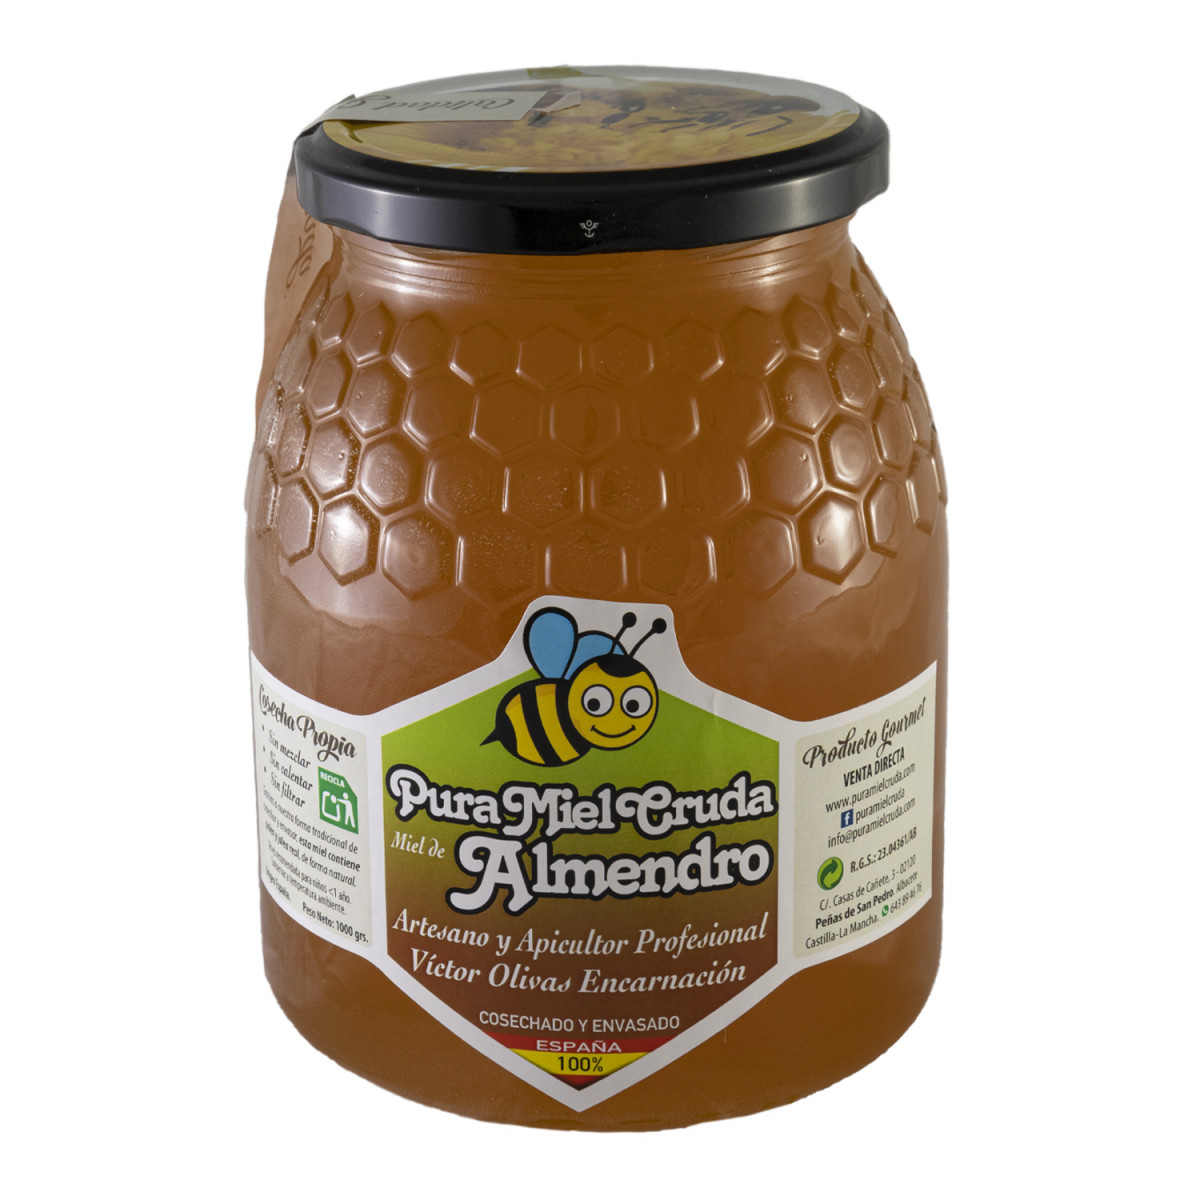 Pura miel cruda Almendro